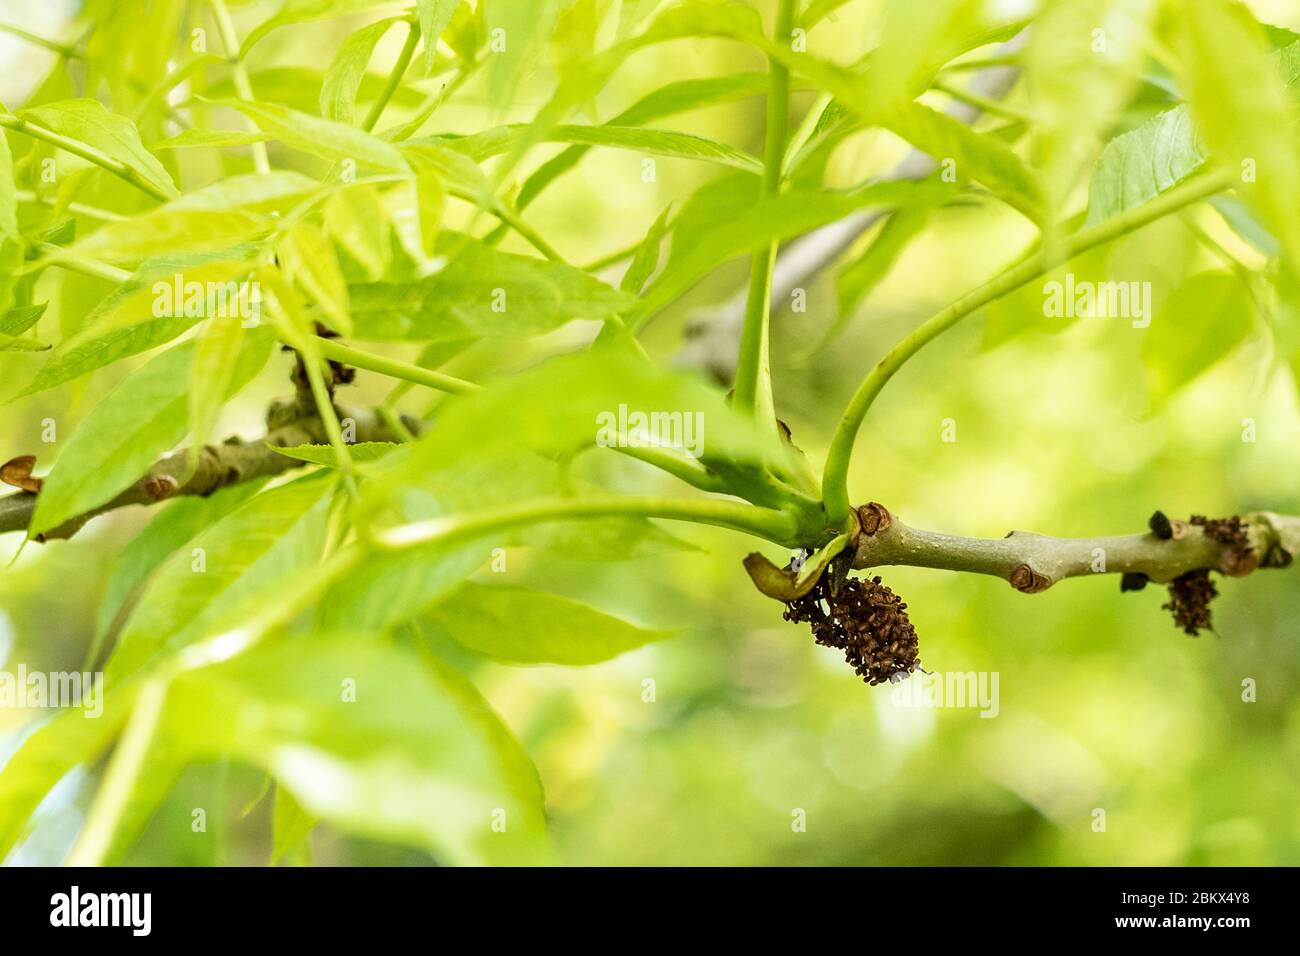 Feuilles et branche de l'arbre de frêne commun - Fraxinus - montrant des galettes de fleurs étaminées probablement causées par l'acarien eriophyid qui ne semblent pas nuire à la santé de Banque D'Images